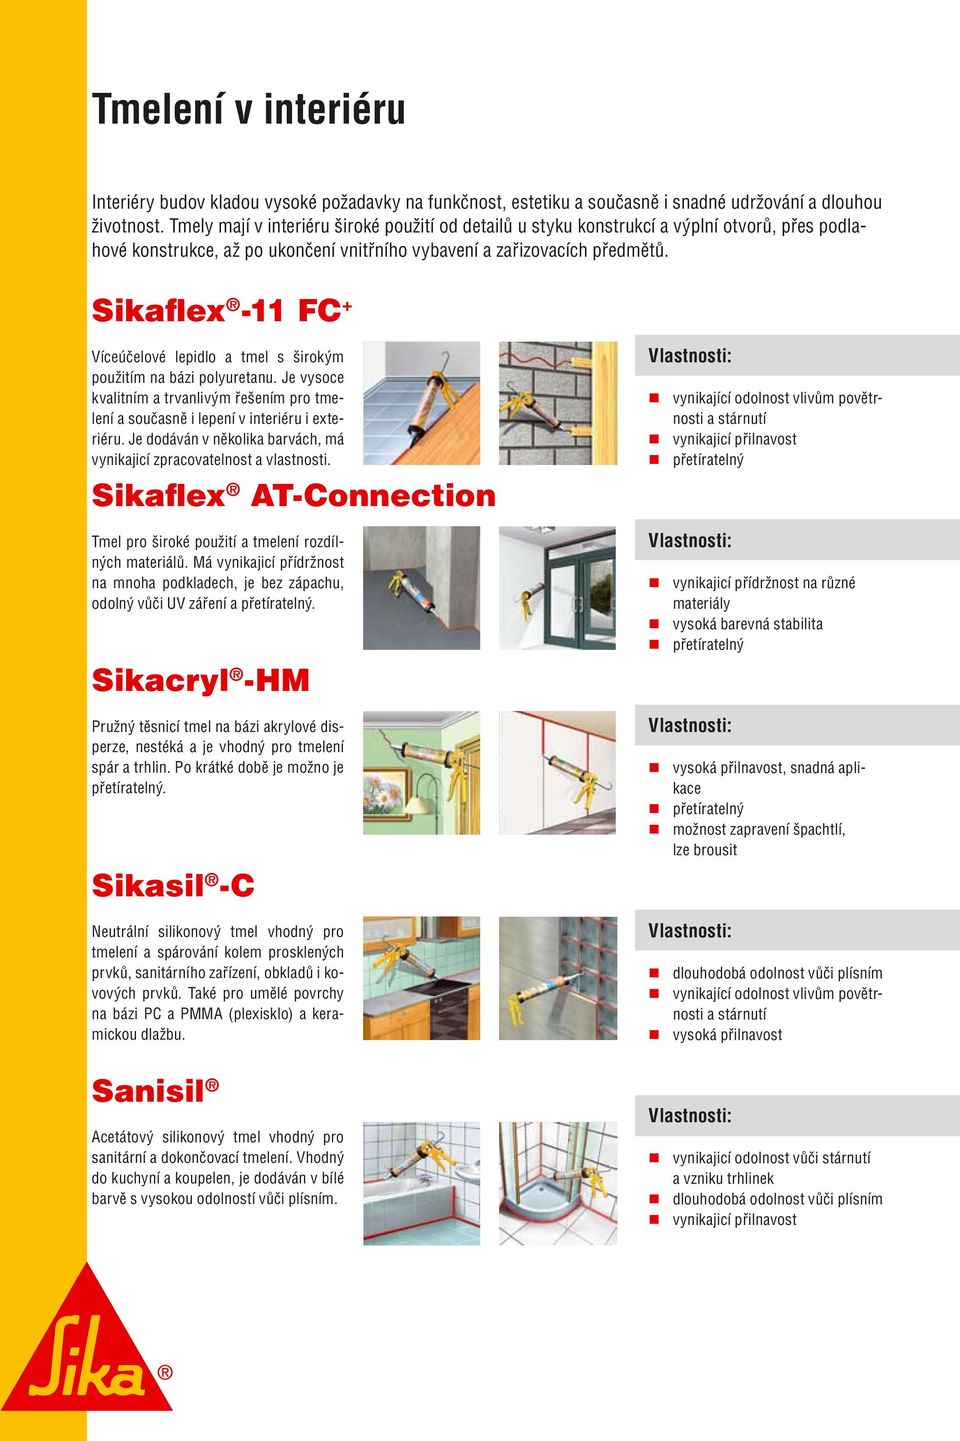 Sikaflex -11 FC + Víceúčelové lepidlo a tmel s širokým použitím na bázi polyuretanu. Je vysoce kvalitním a trvanlivým řešením pro tmelení a současně i lepení v interiéru i exteriéru.